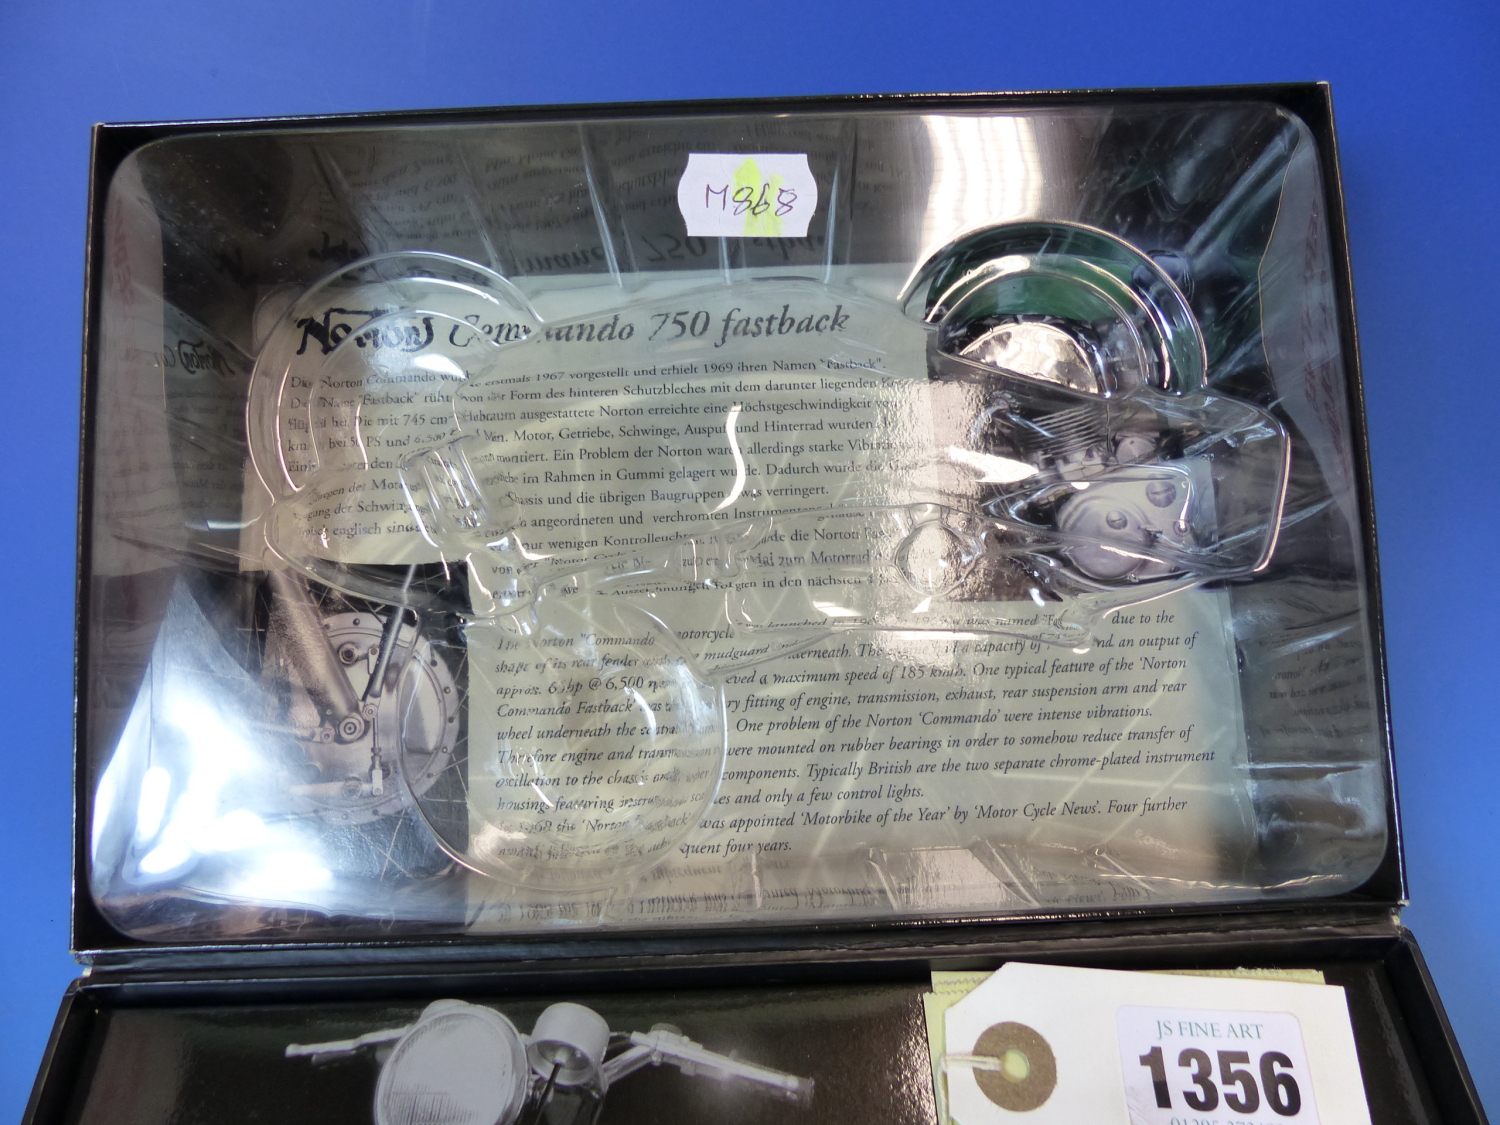 A MINICHAMPS SCALE MODEL OF A NORTON COMMANDO 750 FASTBACK MOTORBIKE IN ITS ORIGINAL BOX, THE BOX. W - Image 5 of 6